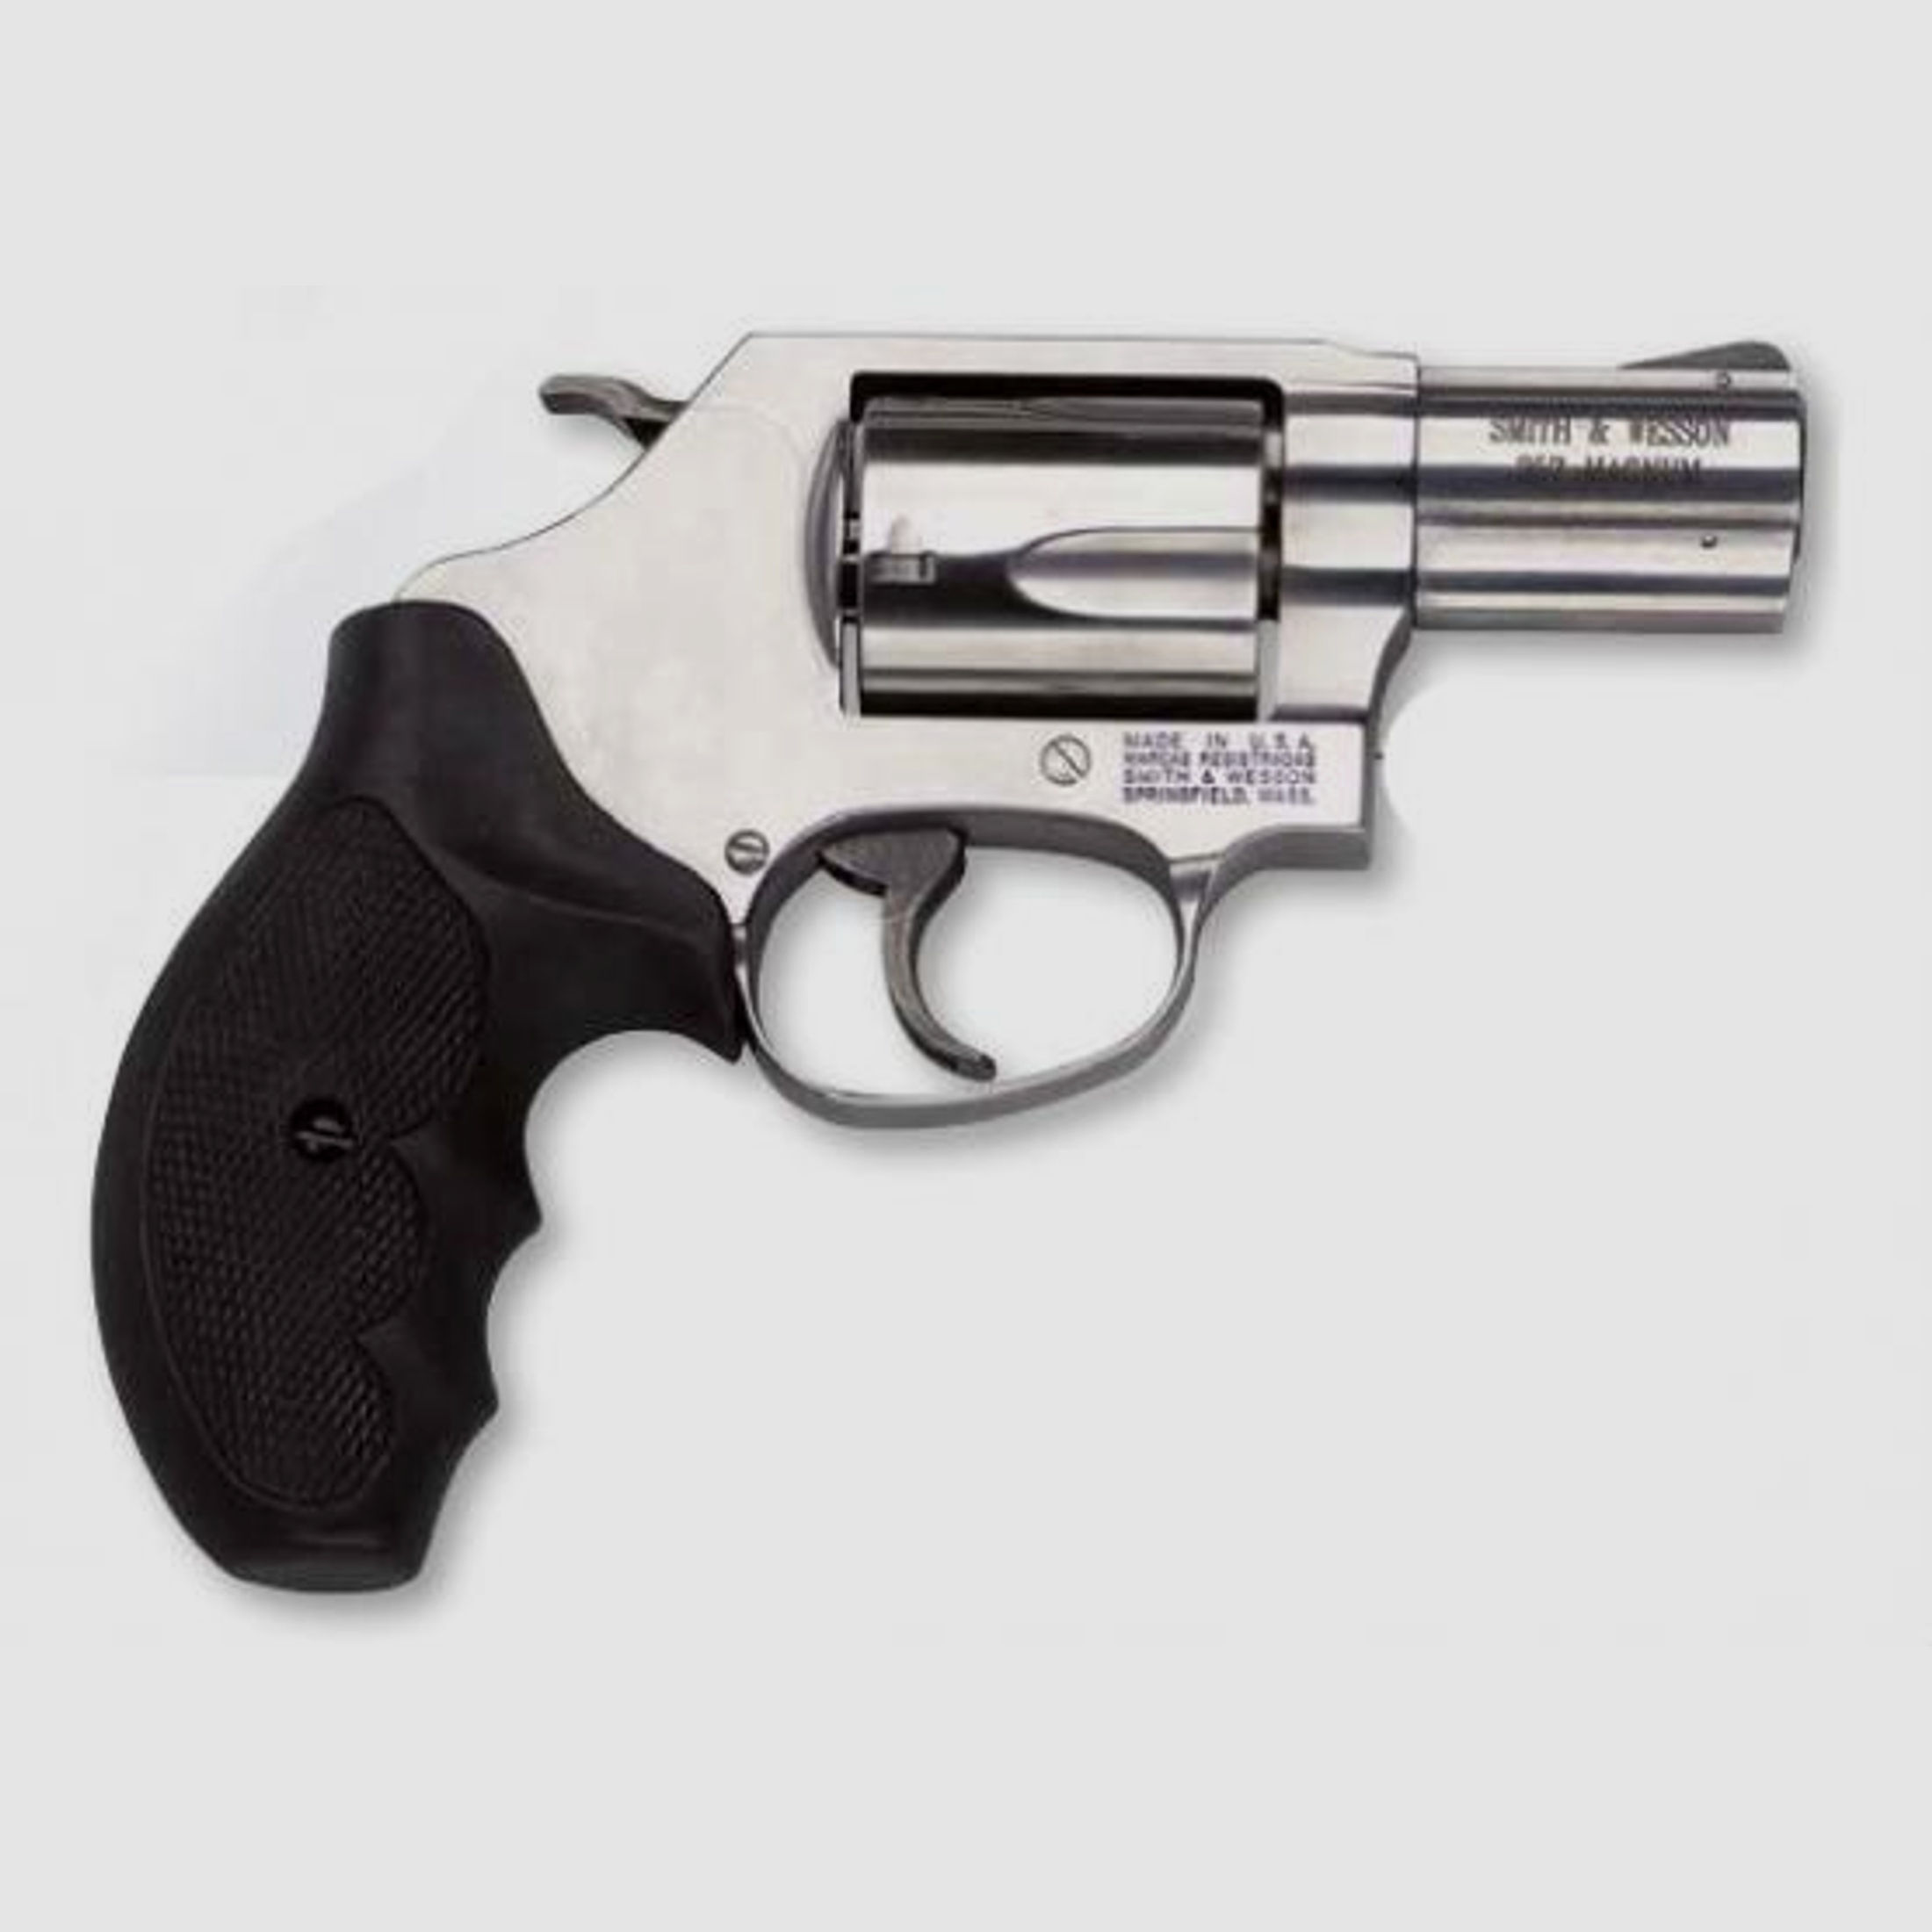 Smith & Wesson Mod. 60, .357 Magnum 2 1/8" Chief Special Revolver 
                Smith & Wesson Mod. 60, .357 Magnum 2 1/8" Chief Special Revolver